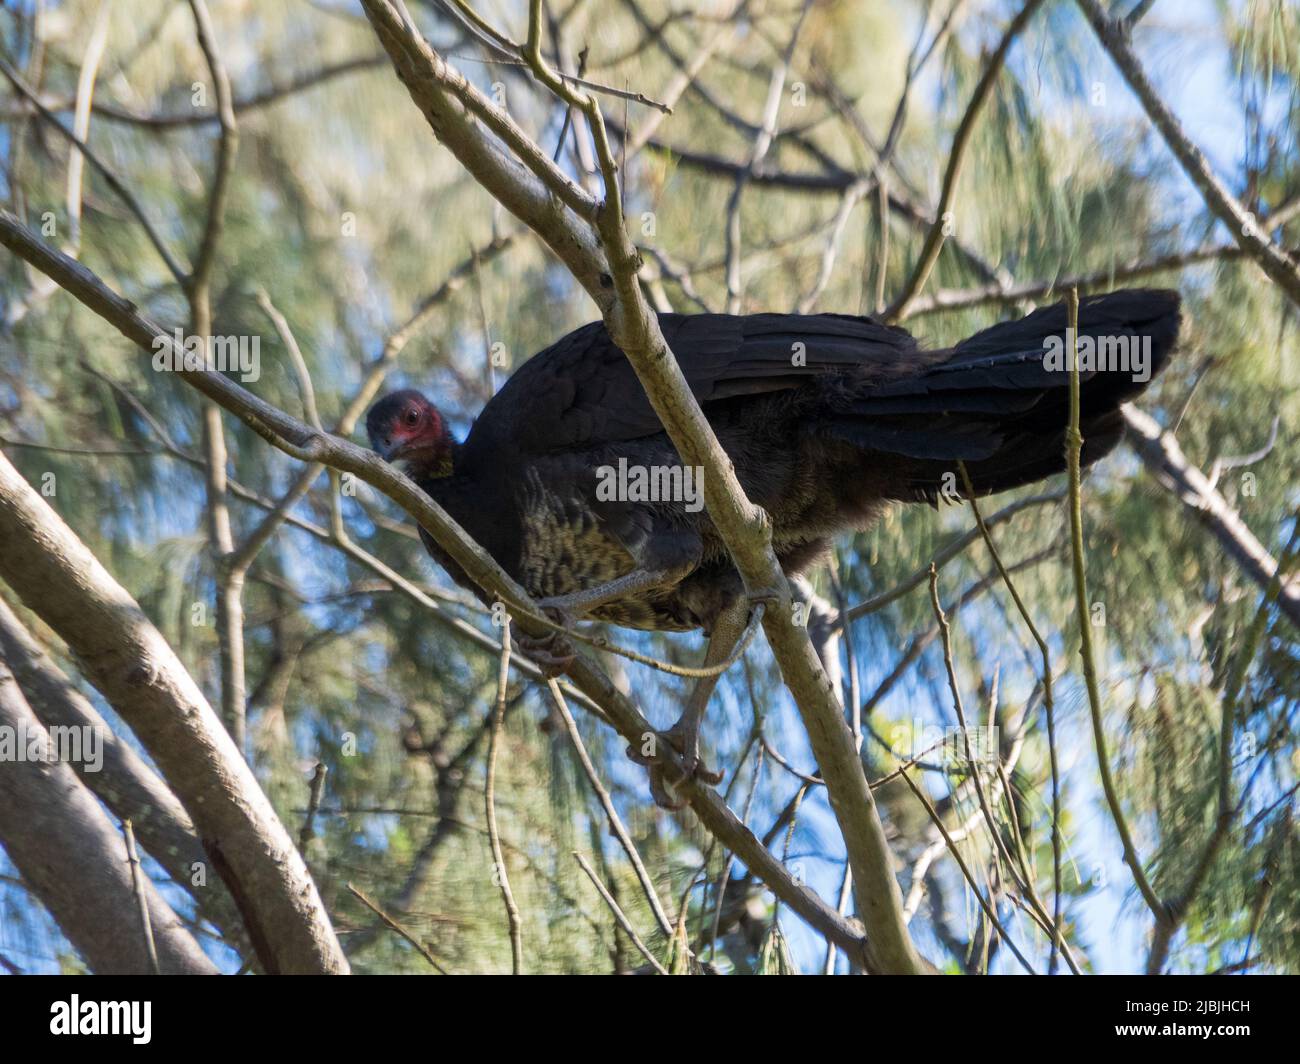 Oiseaux, Bush ou Brush dinde perchés dans un arbre, Australie Banque D'Images